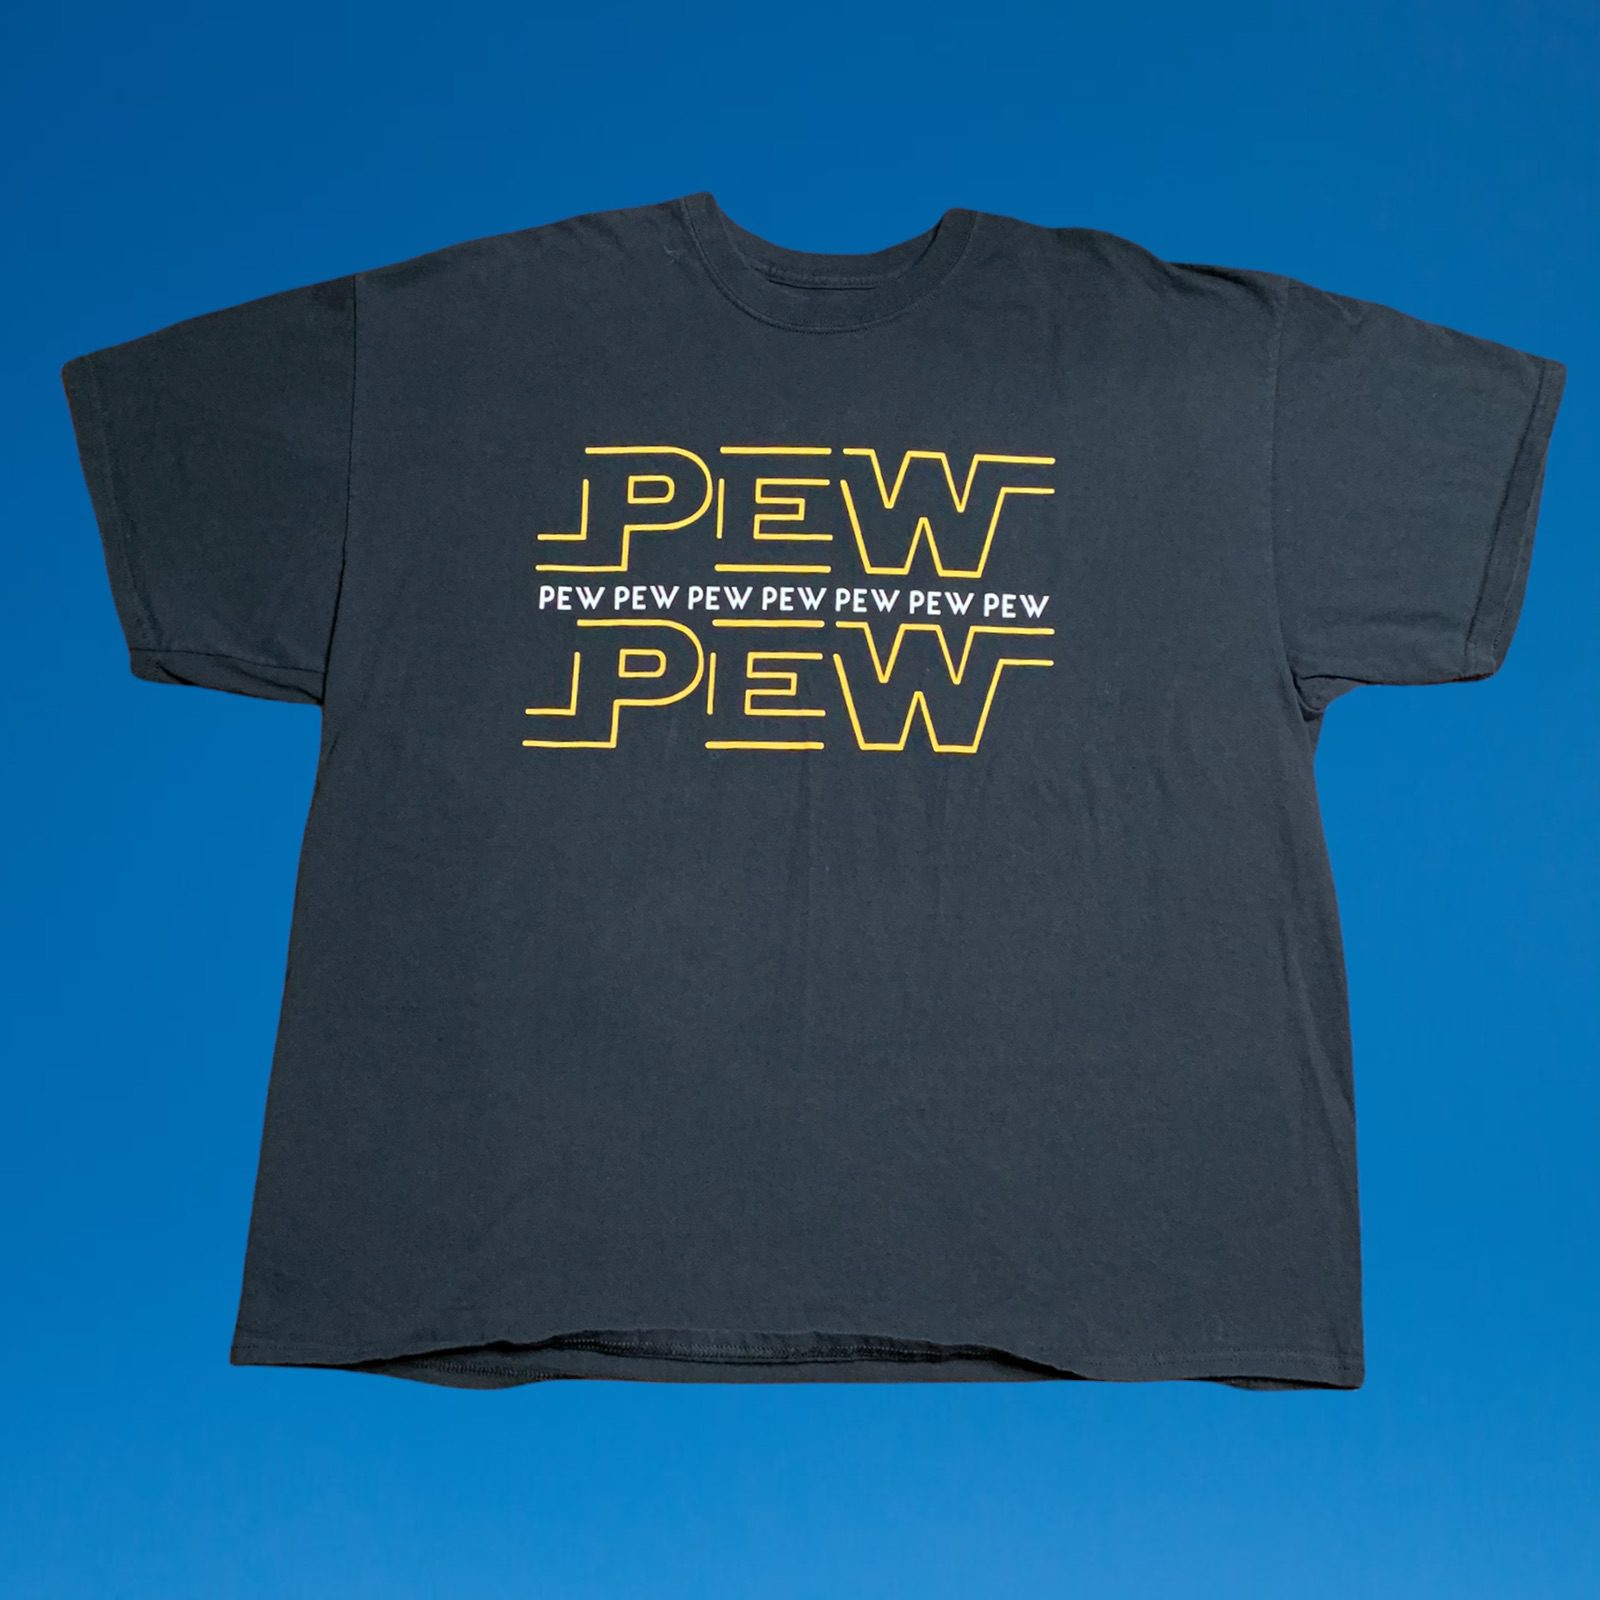 Pew Pew Stars Wars Men's T-Shirt Size XL